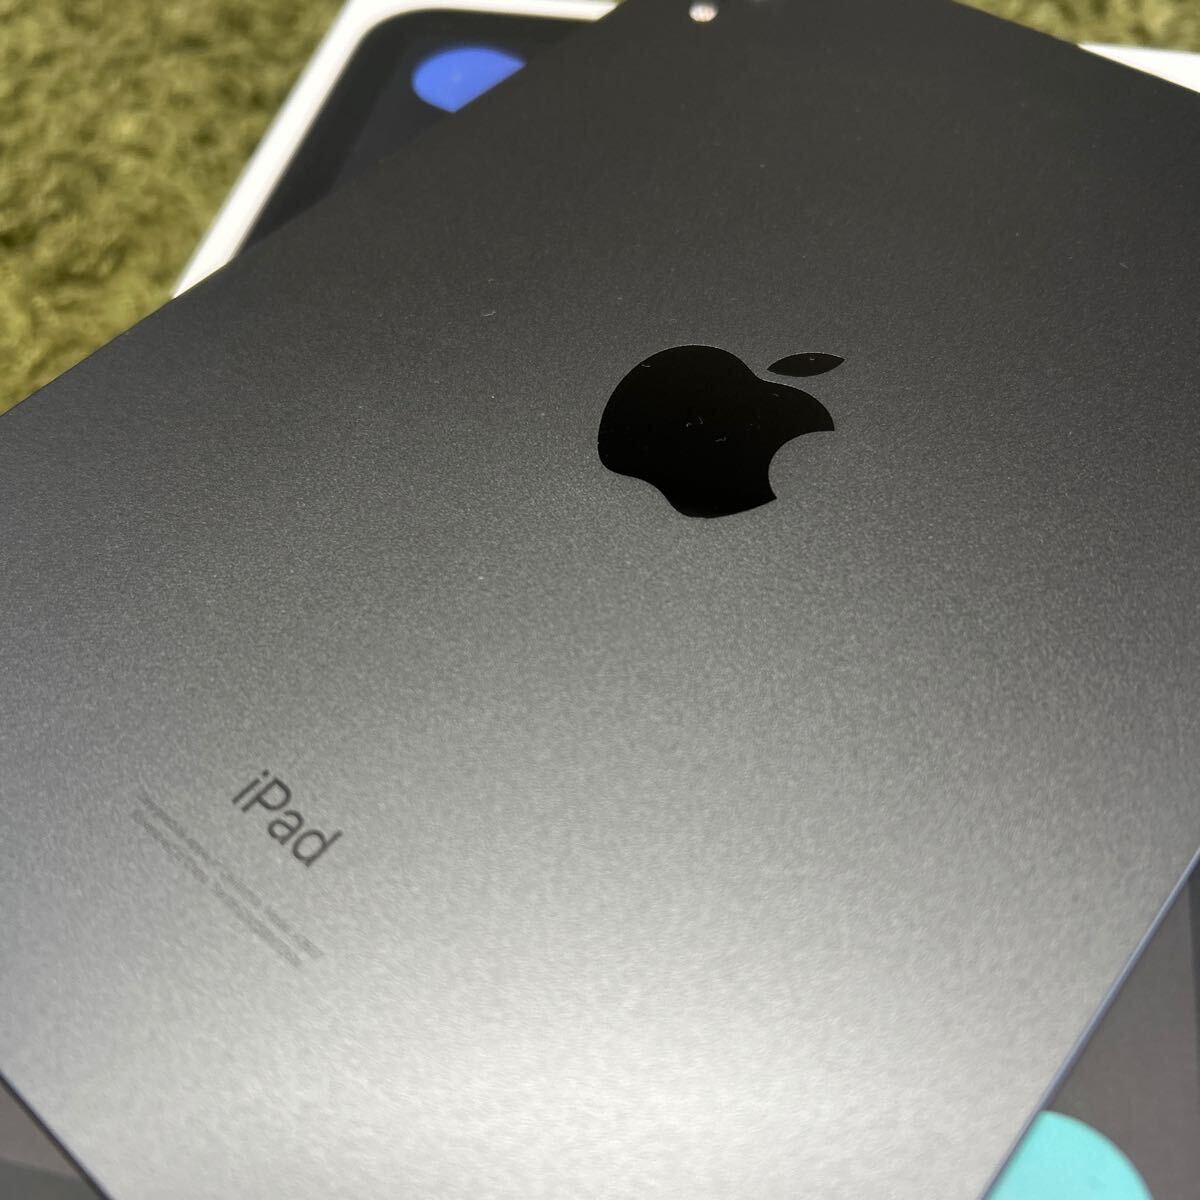  прекрасный товар iPad mini no. 6 поколение Space серый Wi-Fi модель 64GB дополнение 